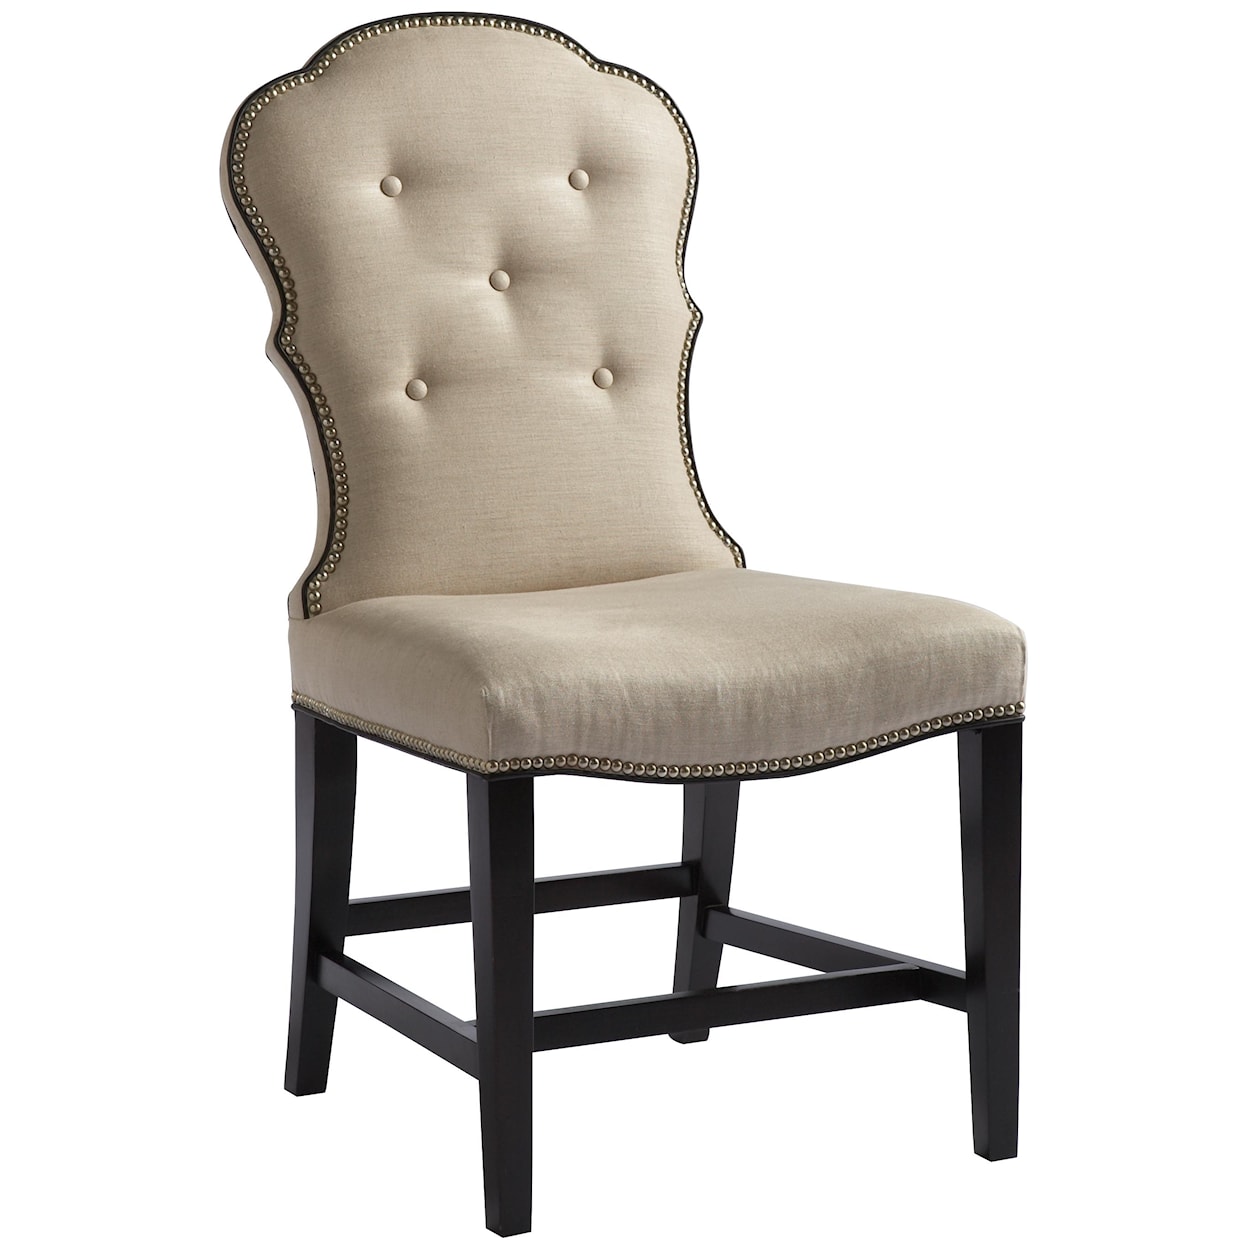 Lillian August Custom Upholstery Arden Park Chair